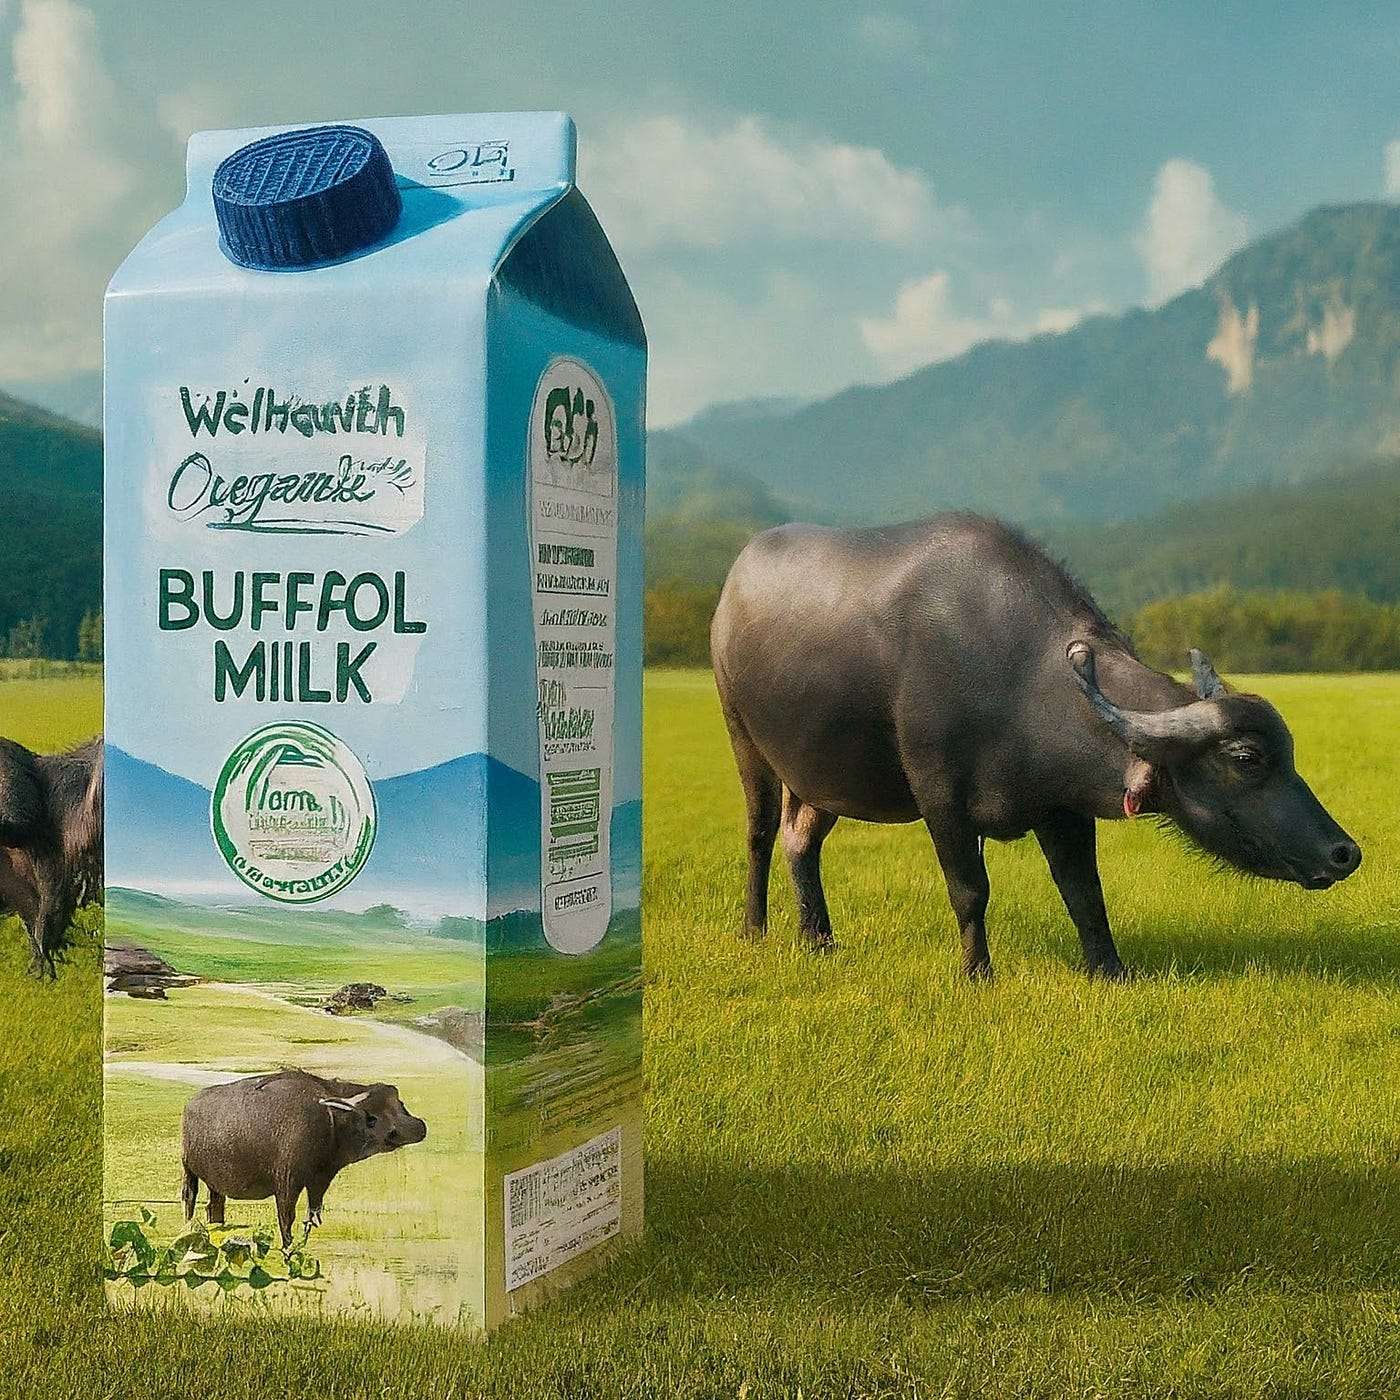 WellhealthOrganic Buffalo Milk Tag